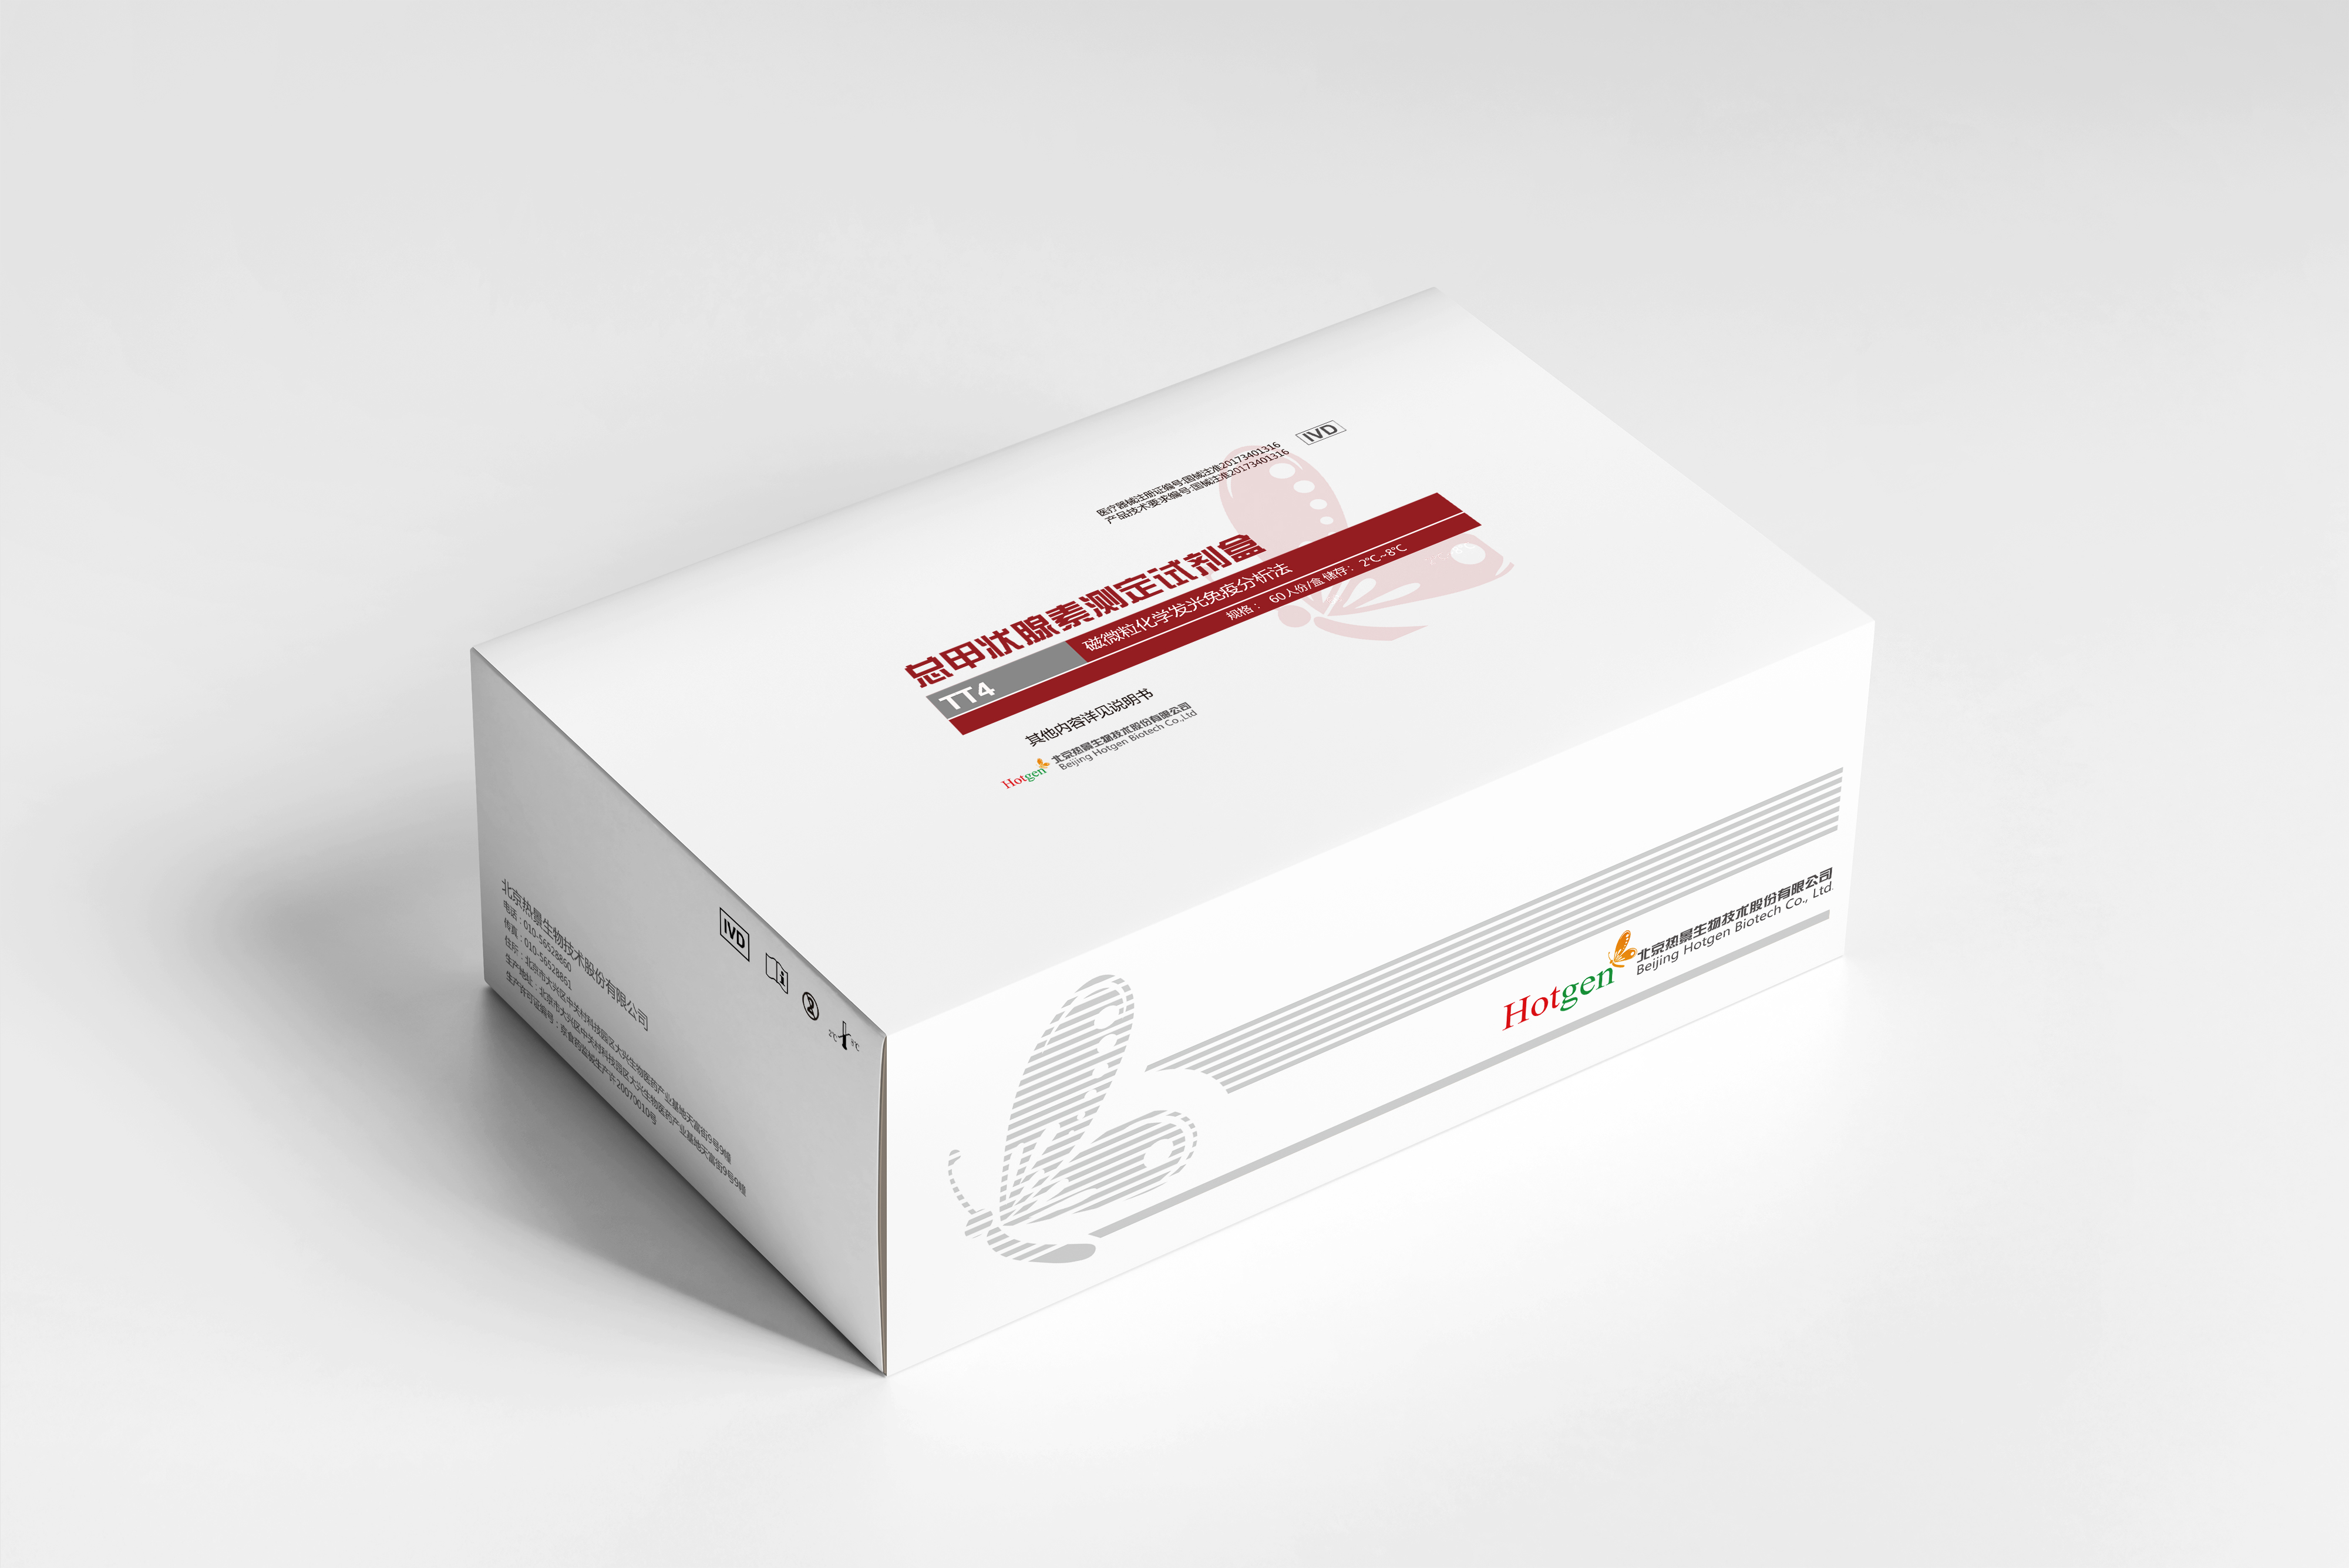 【热景】总甲状腺素测定试剂盒（磁微粒化学发光免疫分析法）/MQ60系列